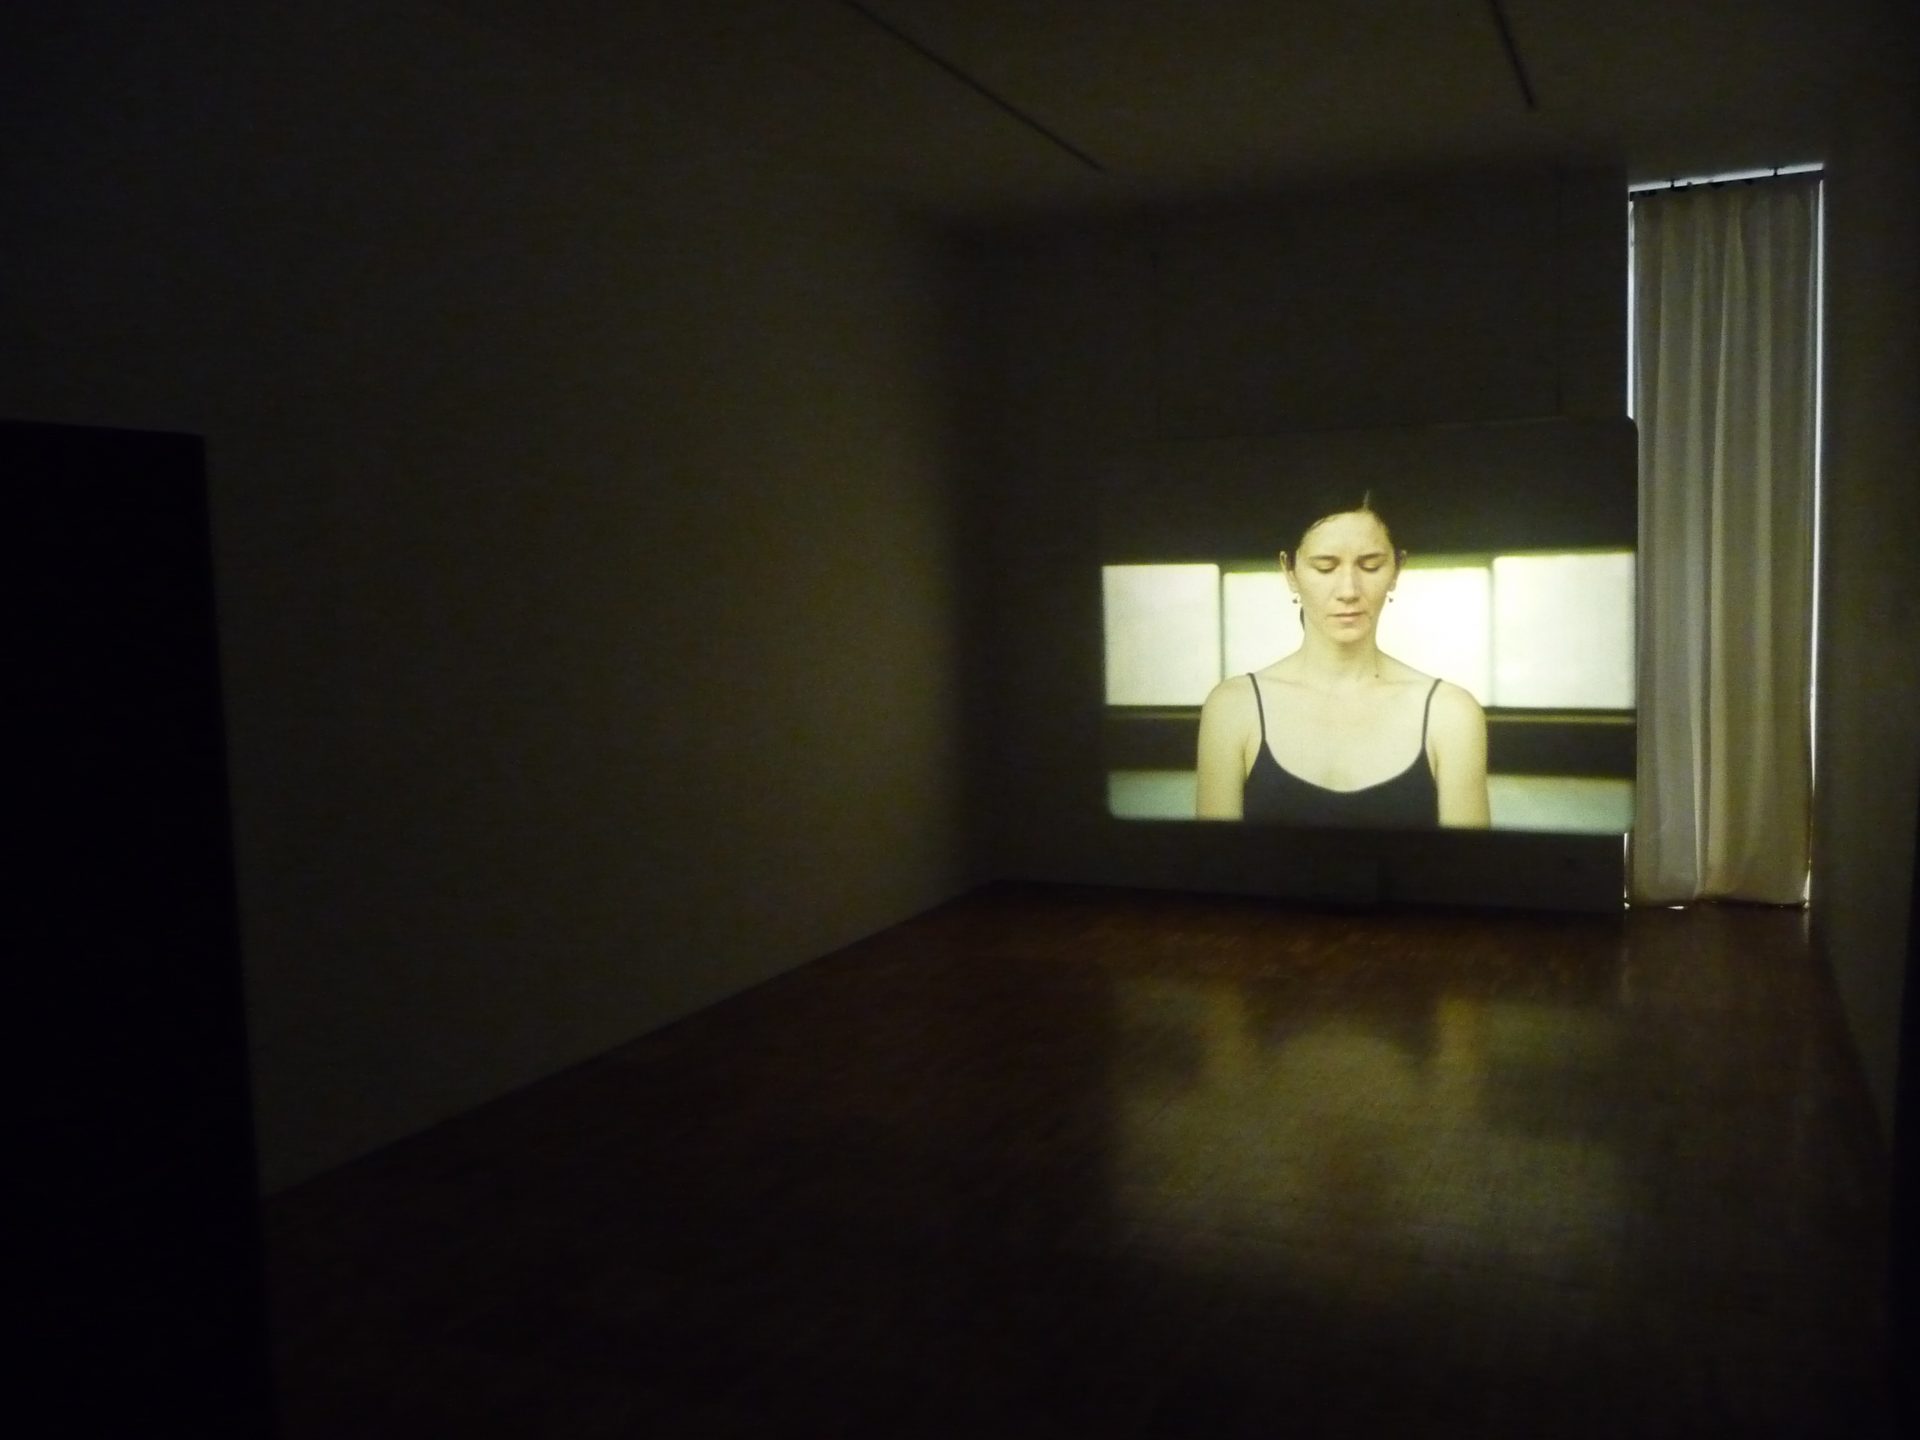 Manon de Boer, installation view at Jan Mot, 2010